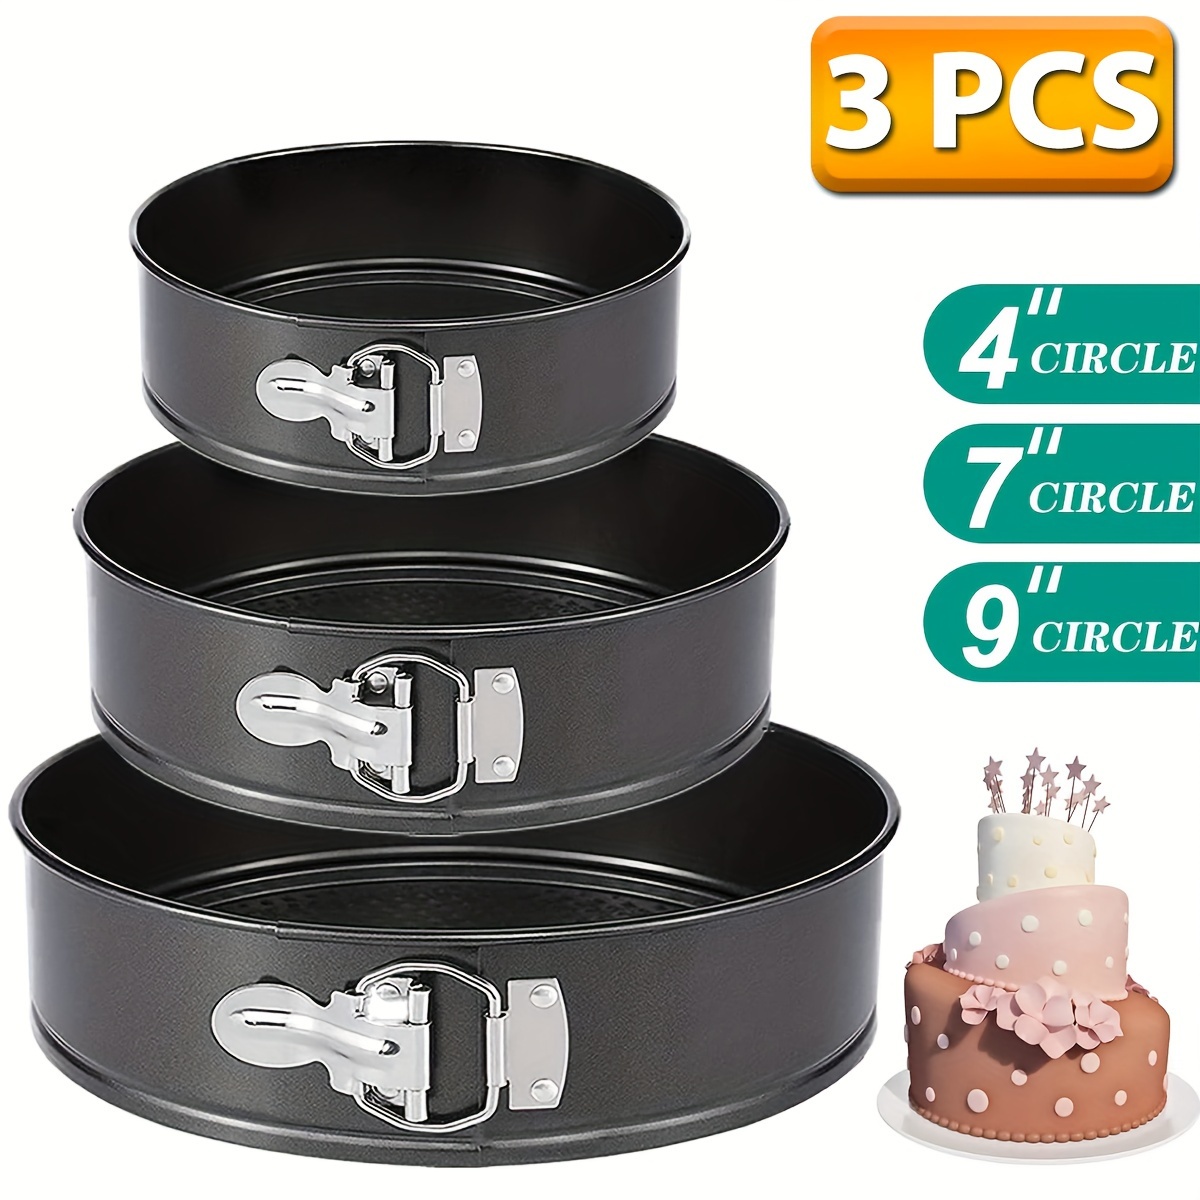 9 Inch Springform Pan, Nonstick Bundt Pan, Heavy Duty Cheesecake